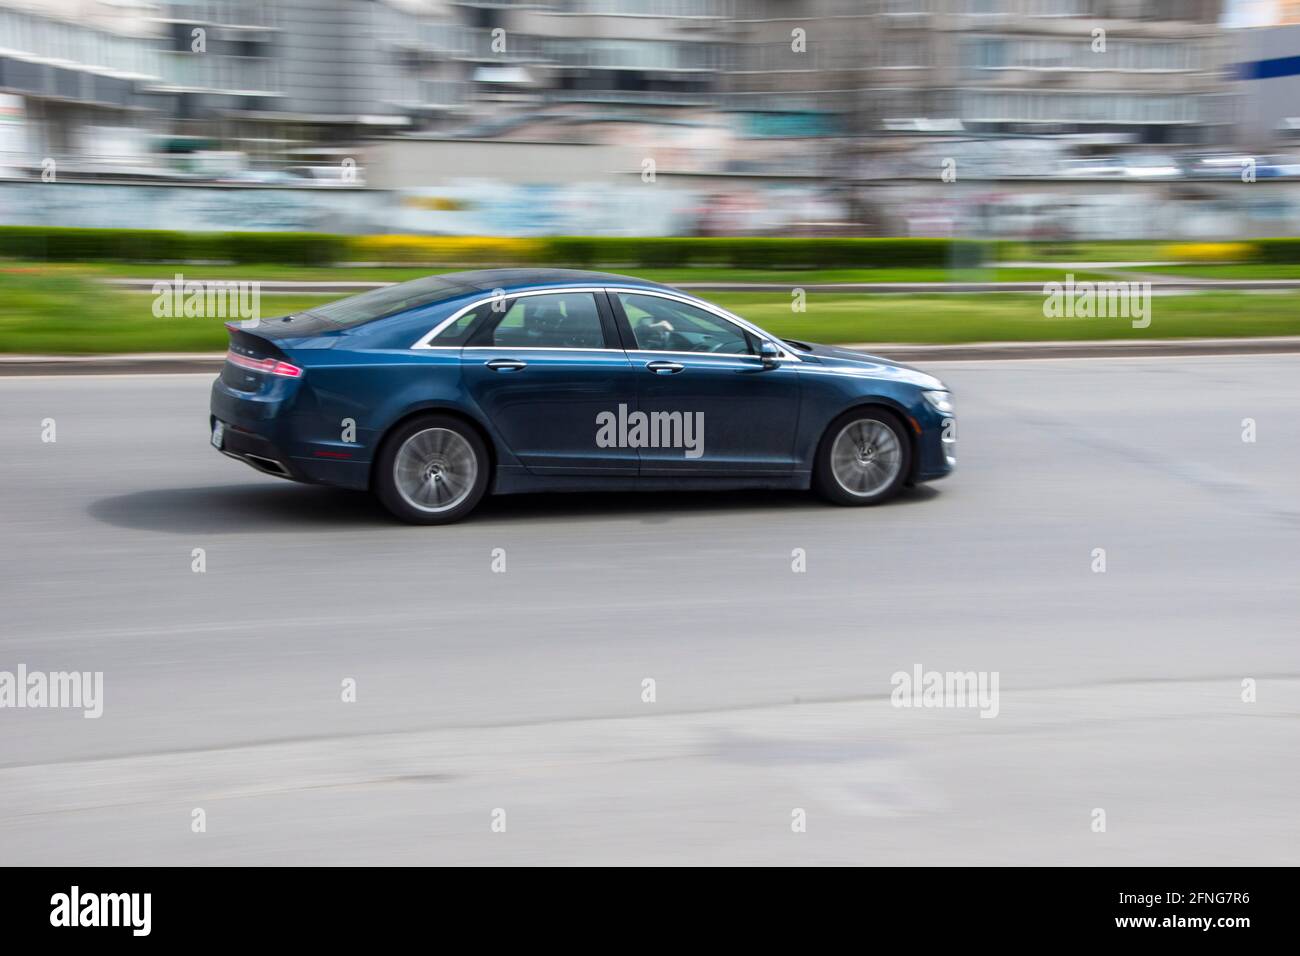 Ucraina, Kiev - 26 aprile 2021: Auto Lincoln MKZ blu in movimento per la strada. Editoriale Foto Stock